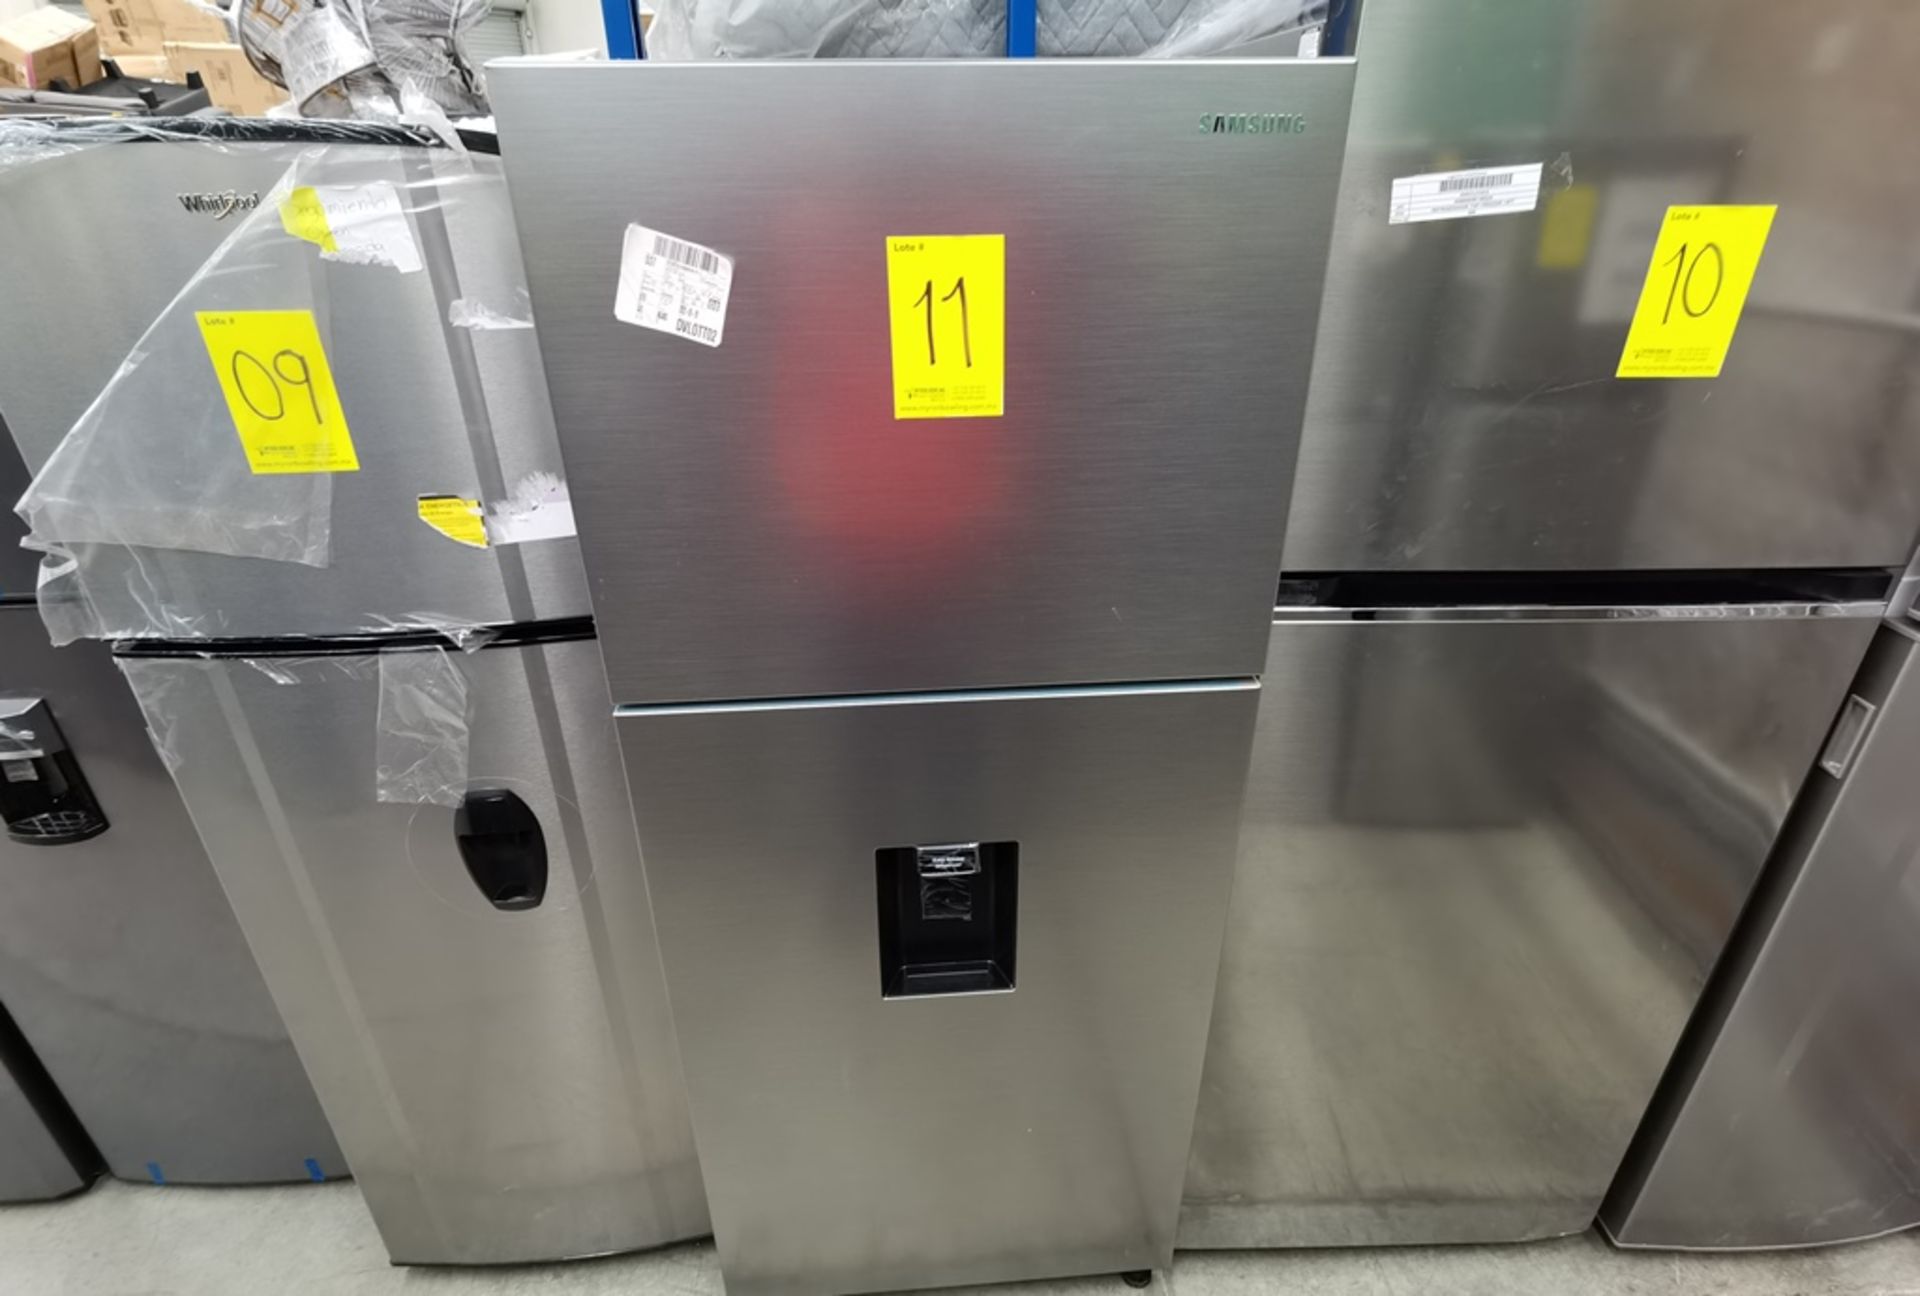 Lote De 2 Refrigeradores Contiene: 1 Refrigerador Marca Samsung Modelo RT44A6304S9, Serie 0BDF4BAR9